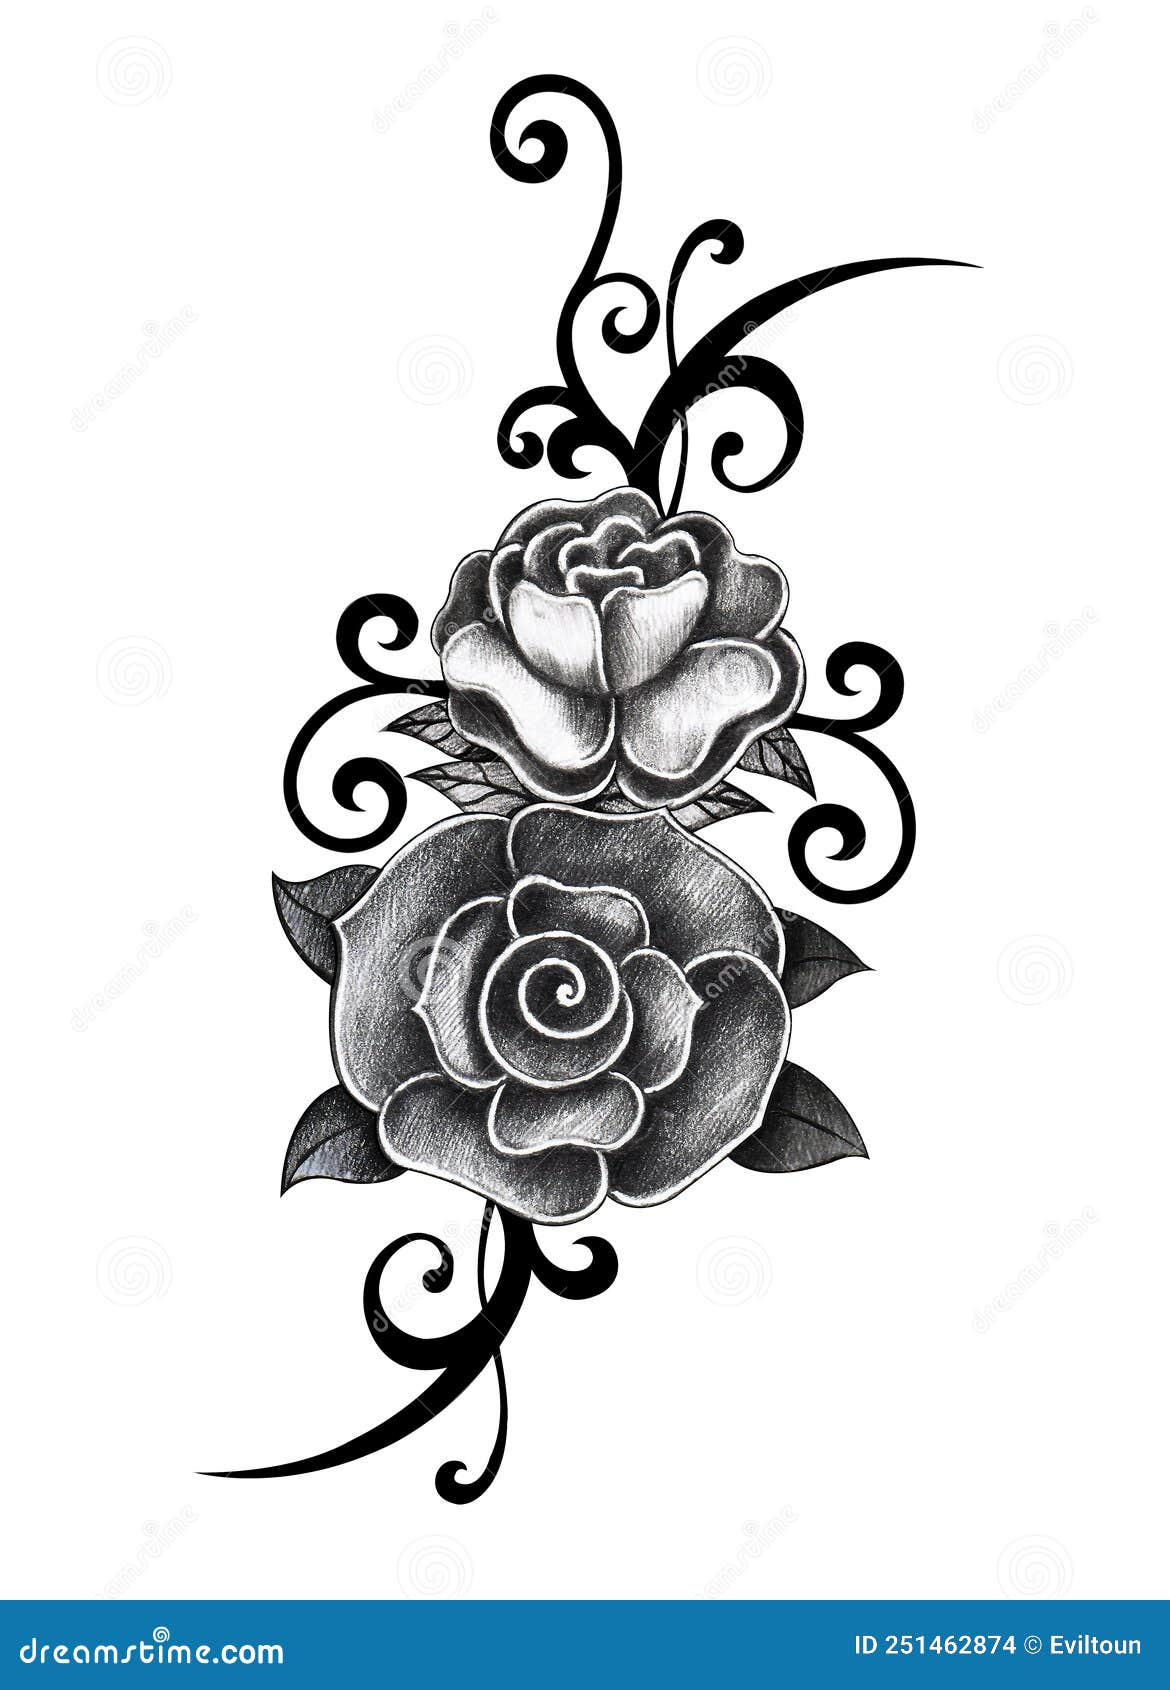 Scarica Realistico tatuaggio di una rosa rossa su carta o tela PNG Online -  Creative Fabrica